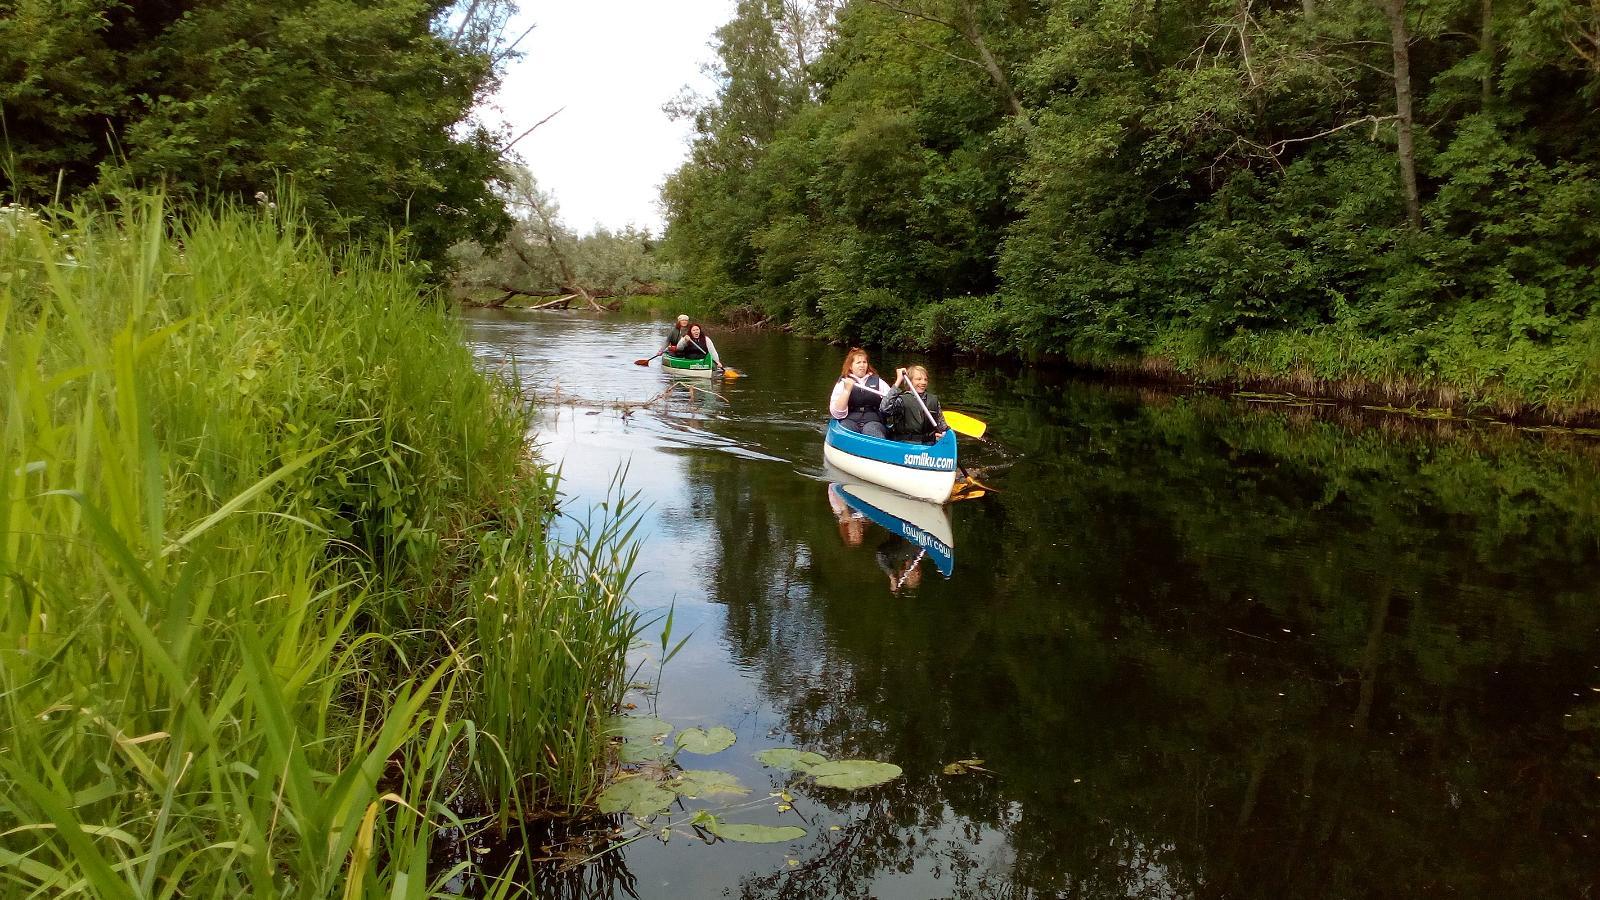 Tūrisma sētas "Salmiku" rīkotie izbraucieni ar kanoe laivām pa Pērnavas upi